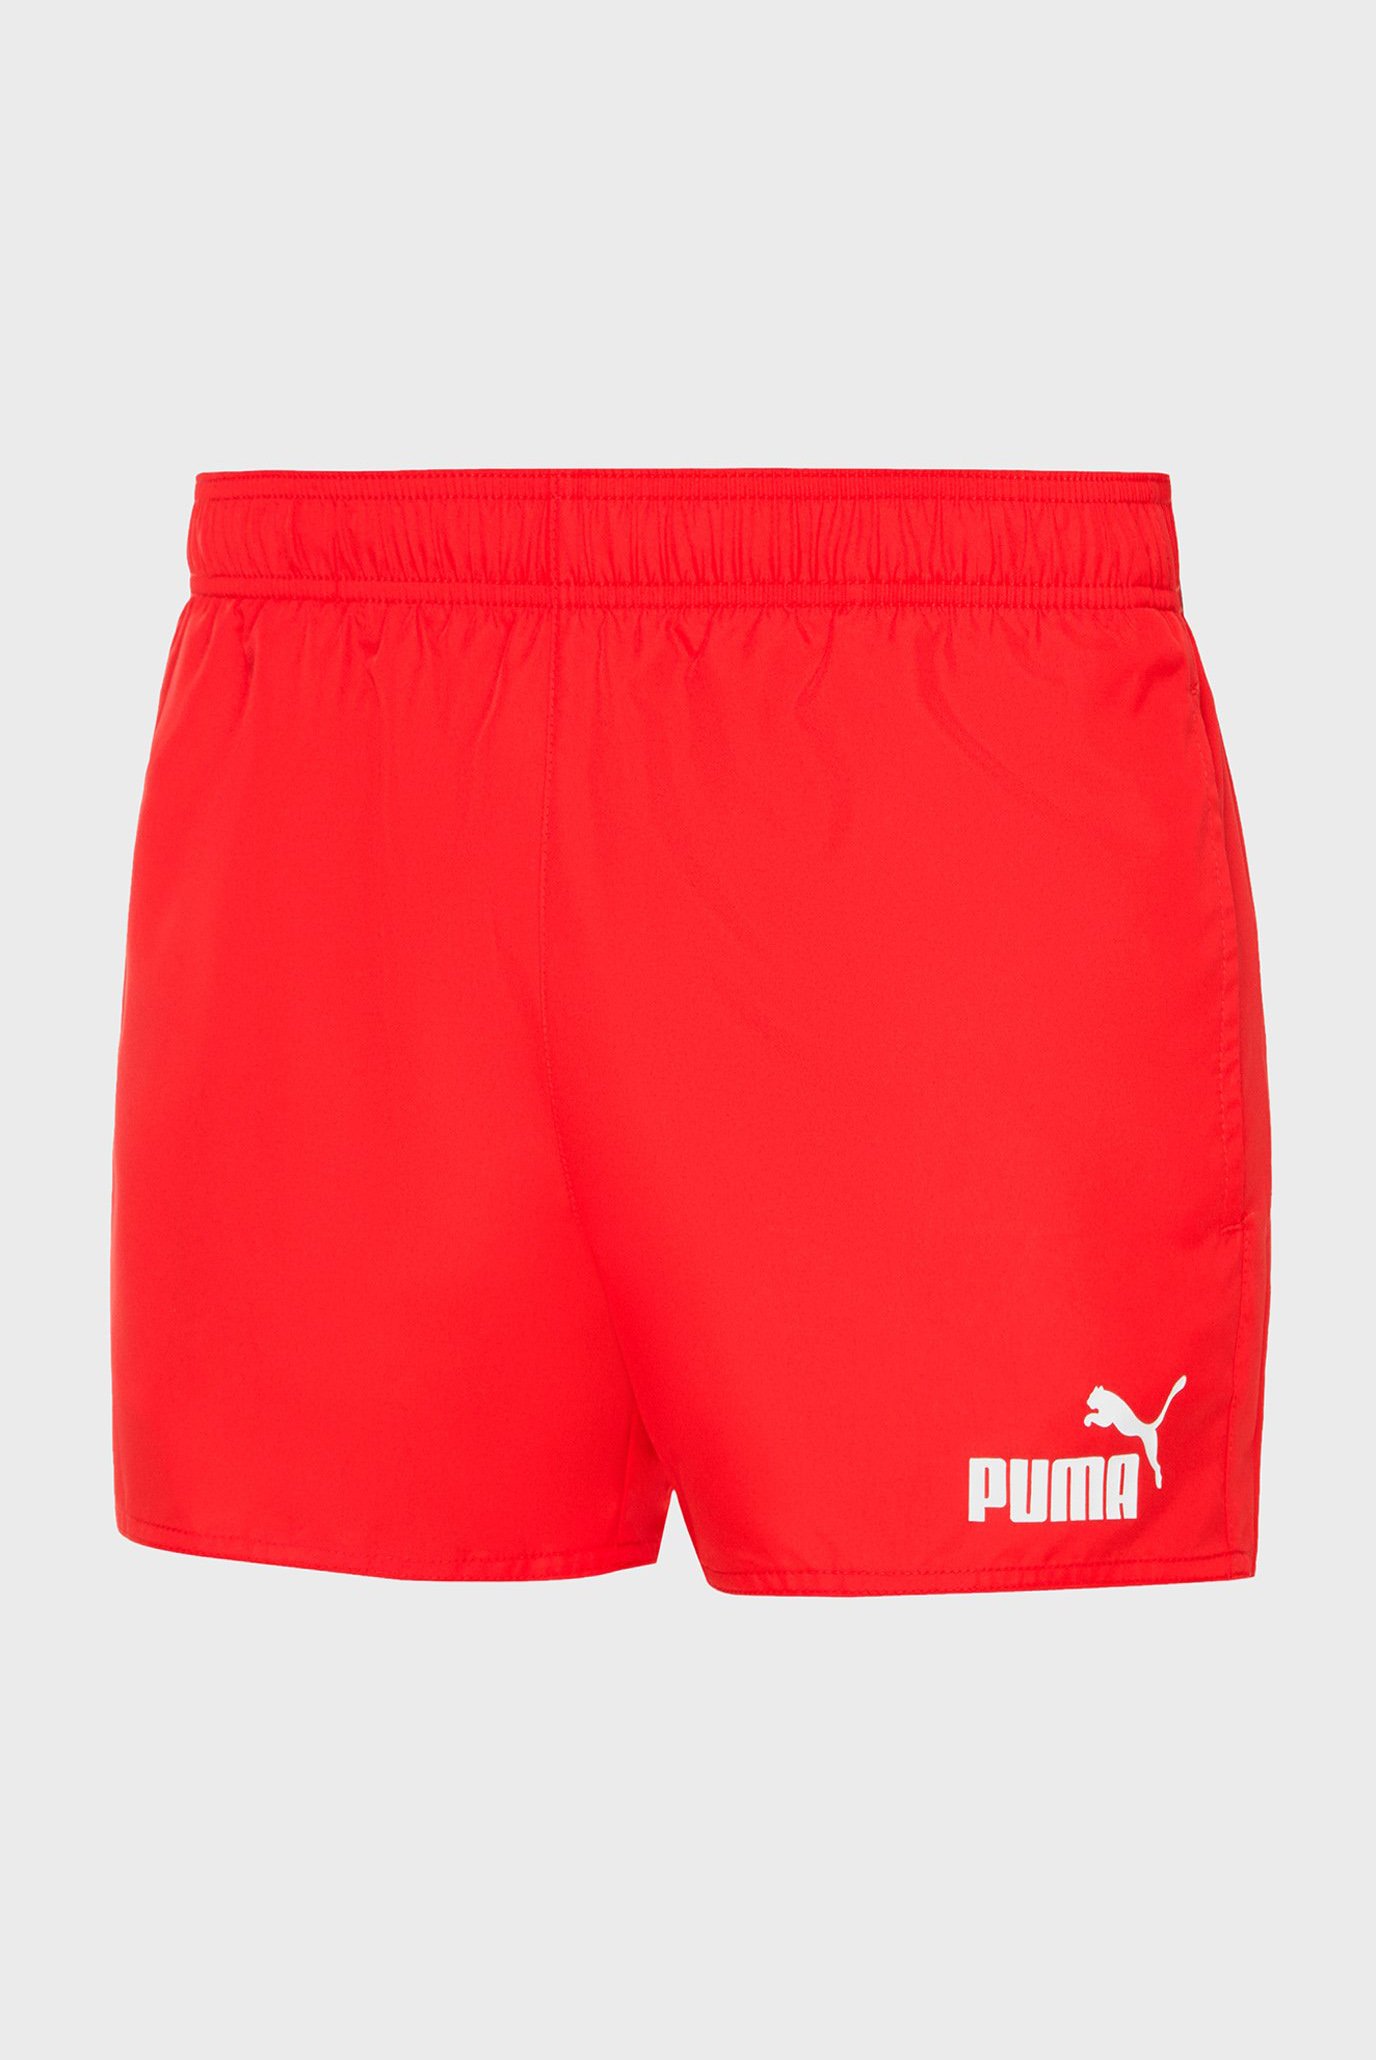 Чоловічі червоні плавальні шорти PUMA MEN SWIM SHORT SHORTS 1 1